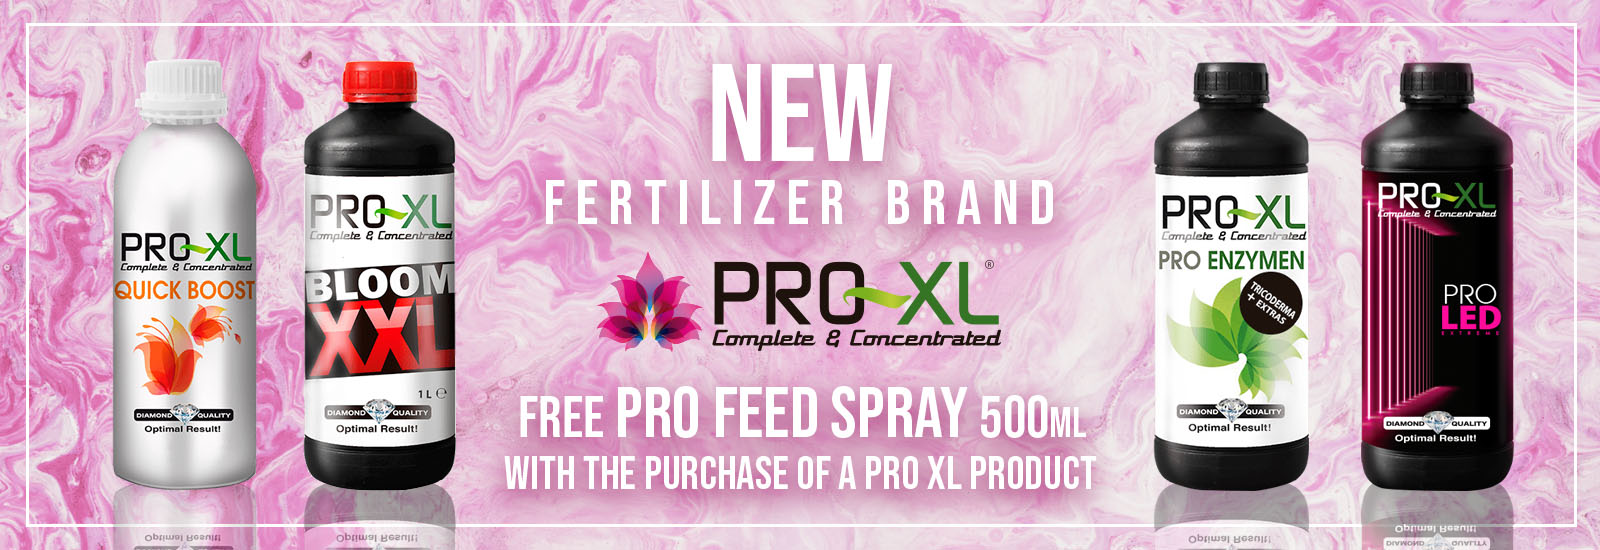 proxl-fertilizers-promo.jpg